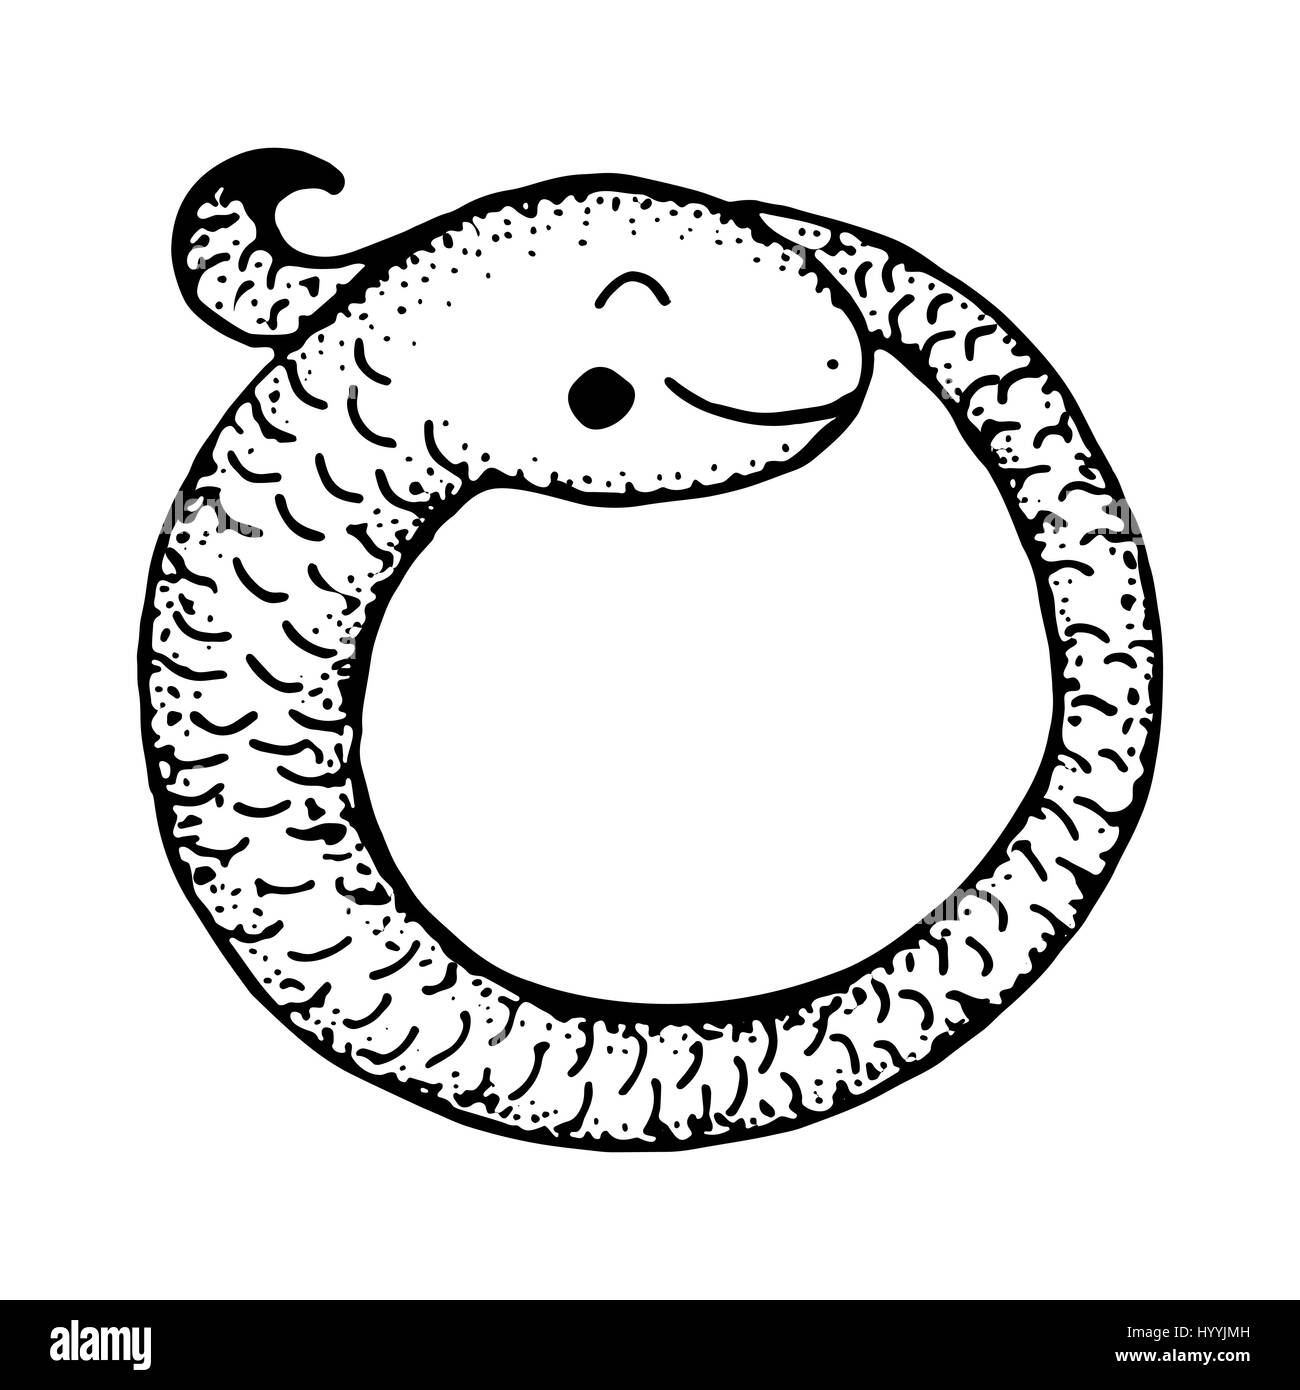 Serpent enroulé caricature. Illustration vecteur doodle dessiné à la main. Illustration de Vecteur